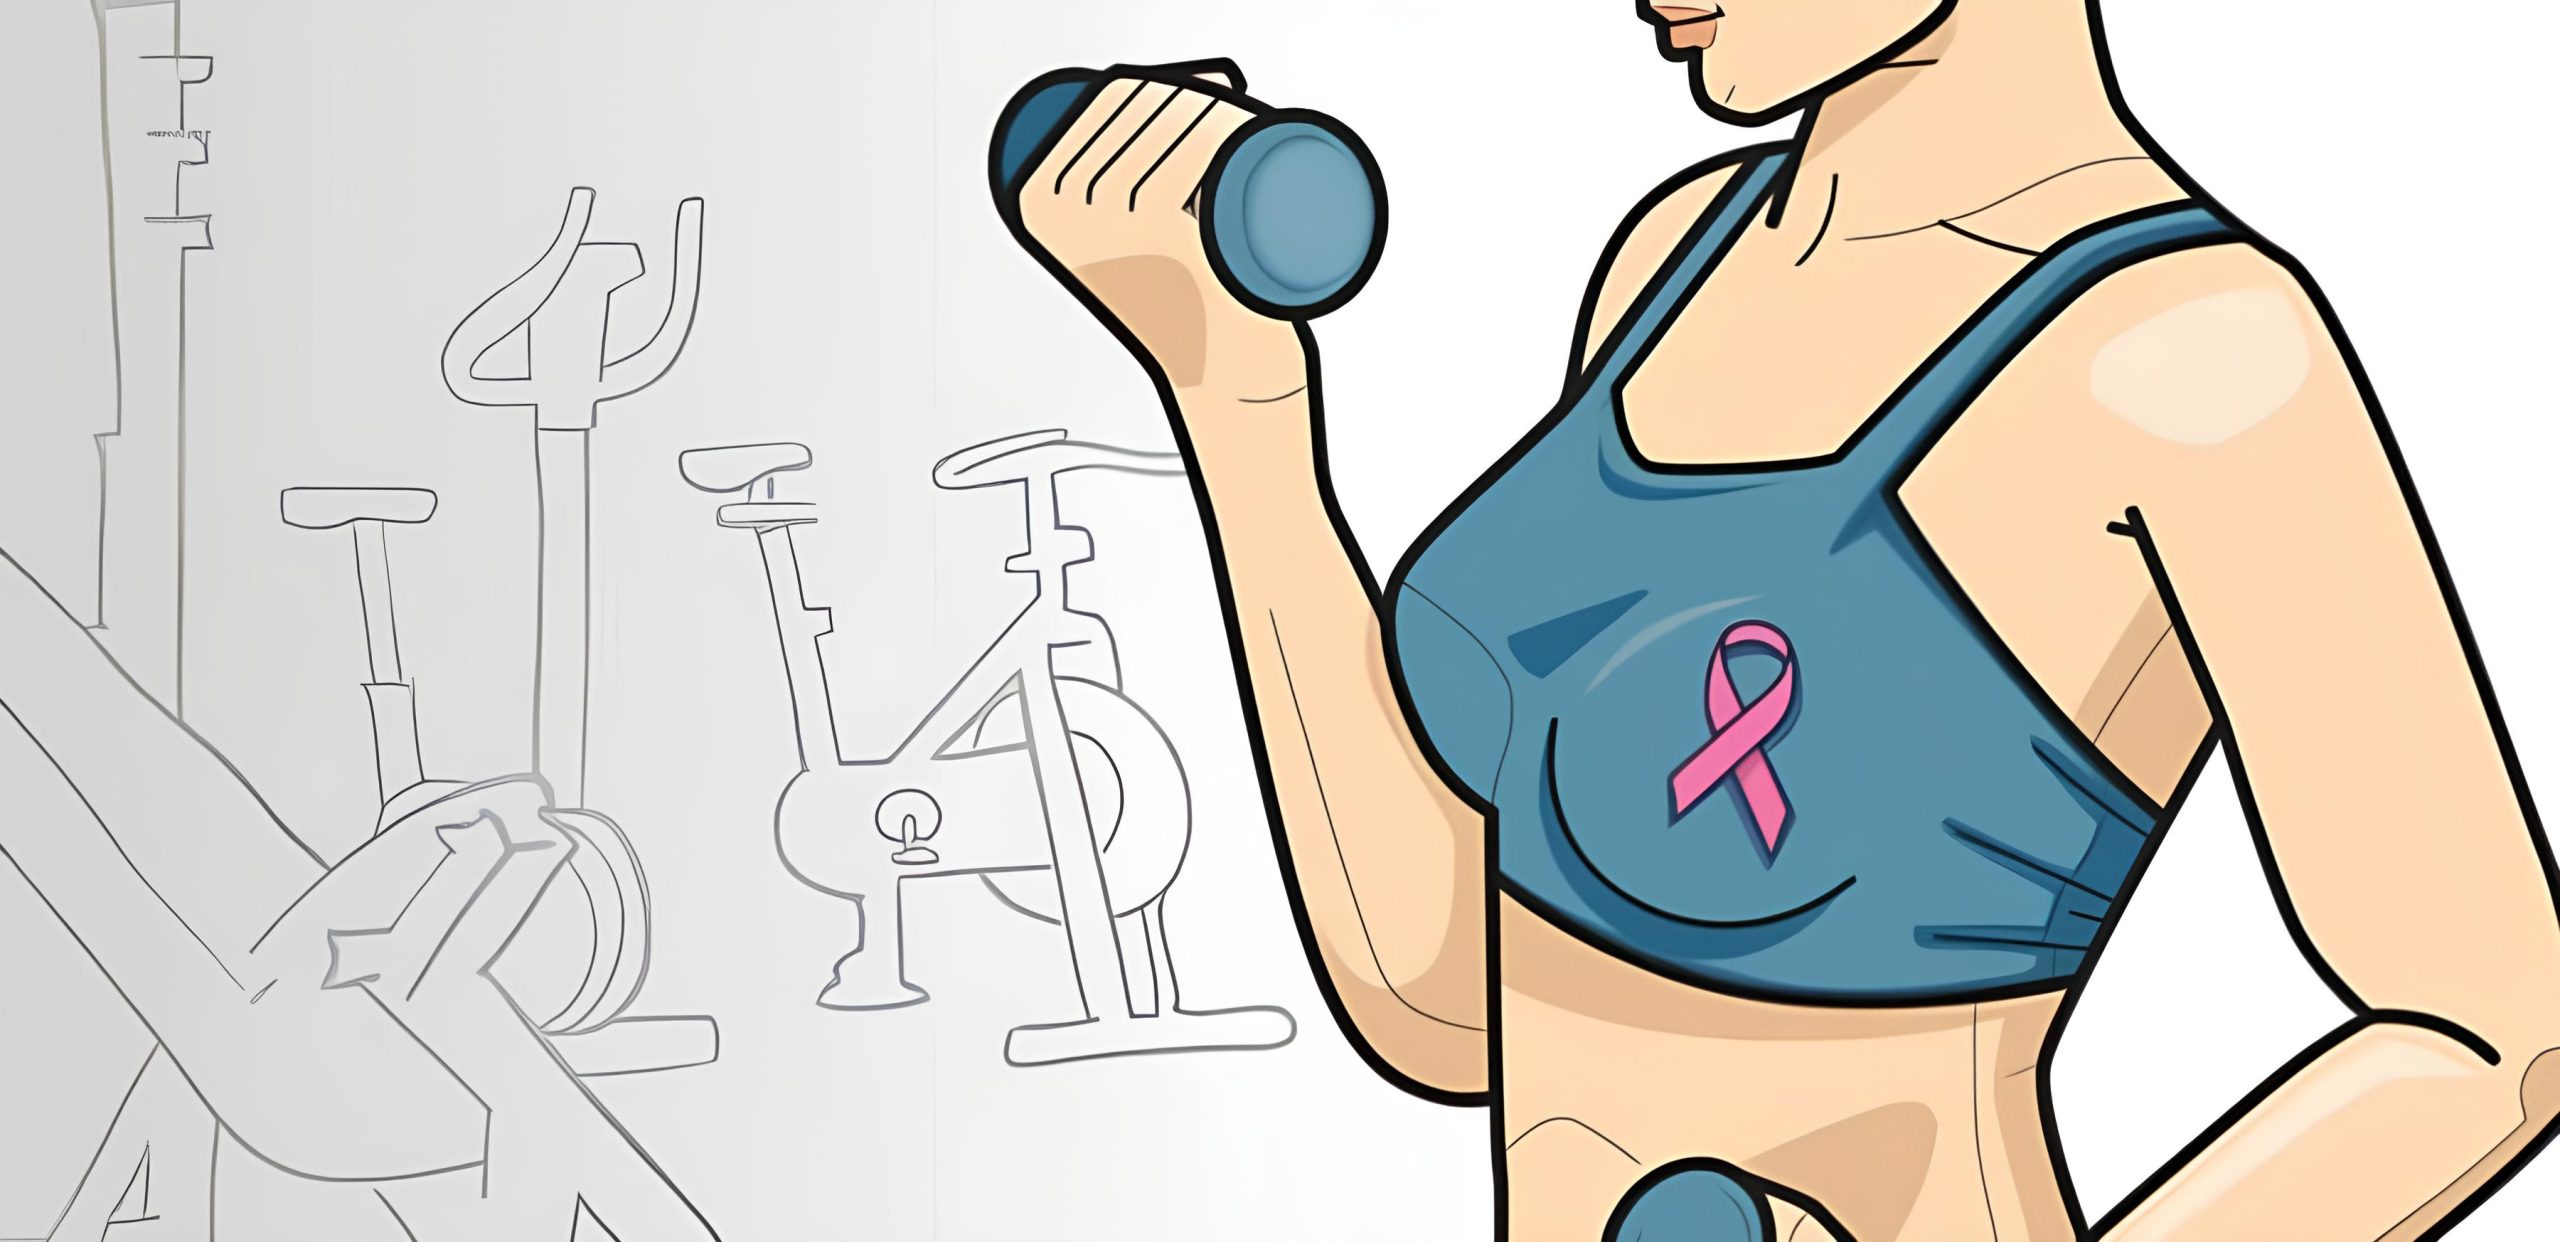 Exercícios físicos podem ajudar pacientes com câncer de mama avançado